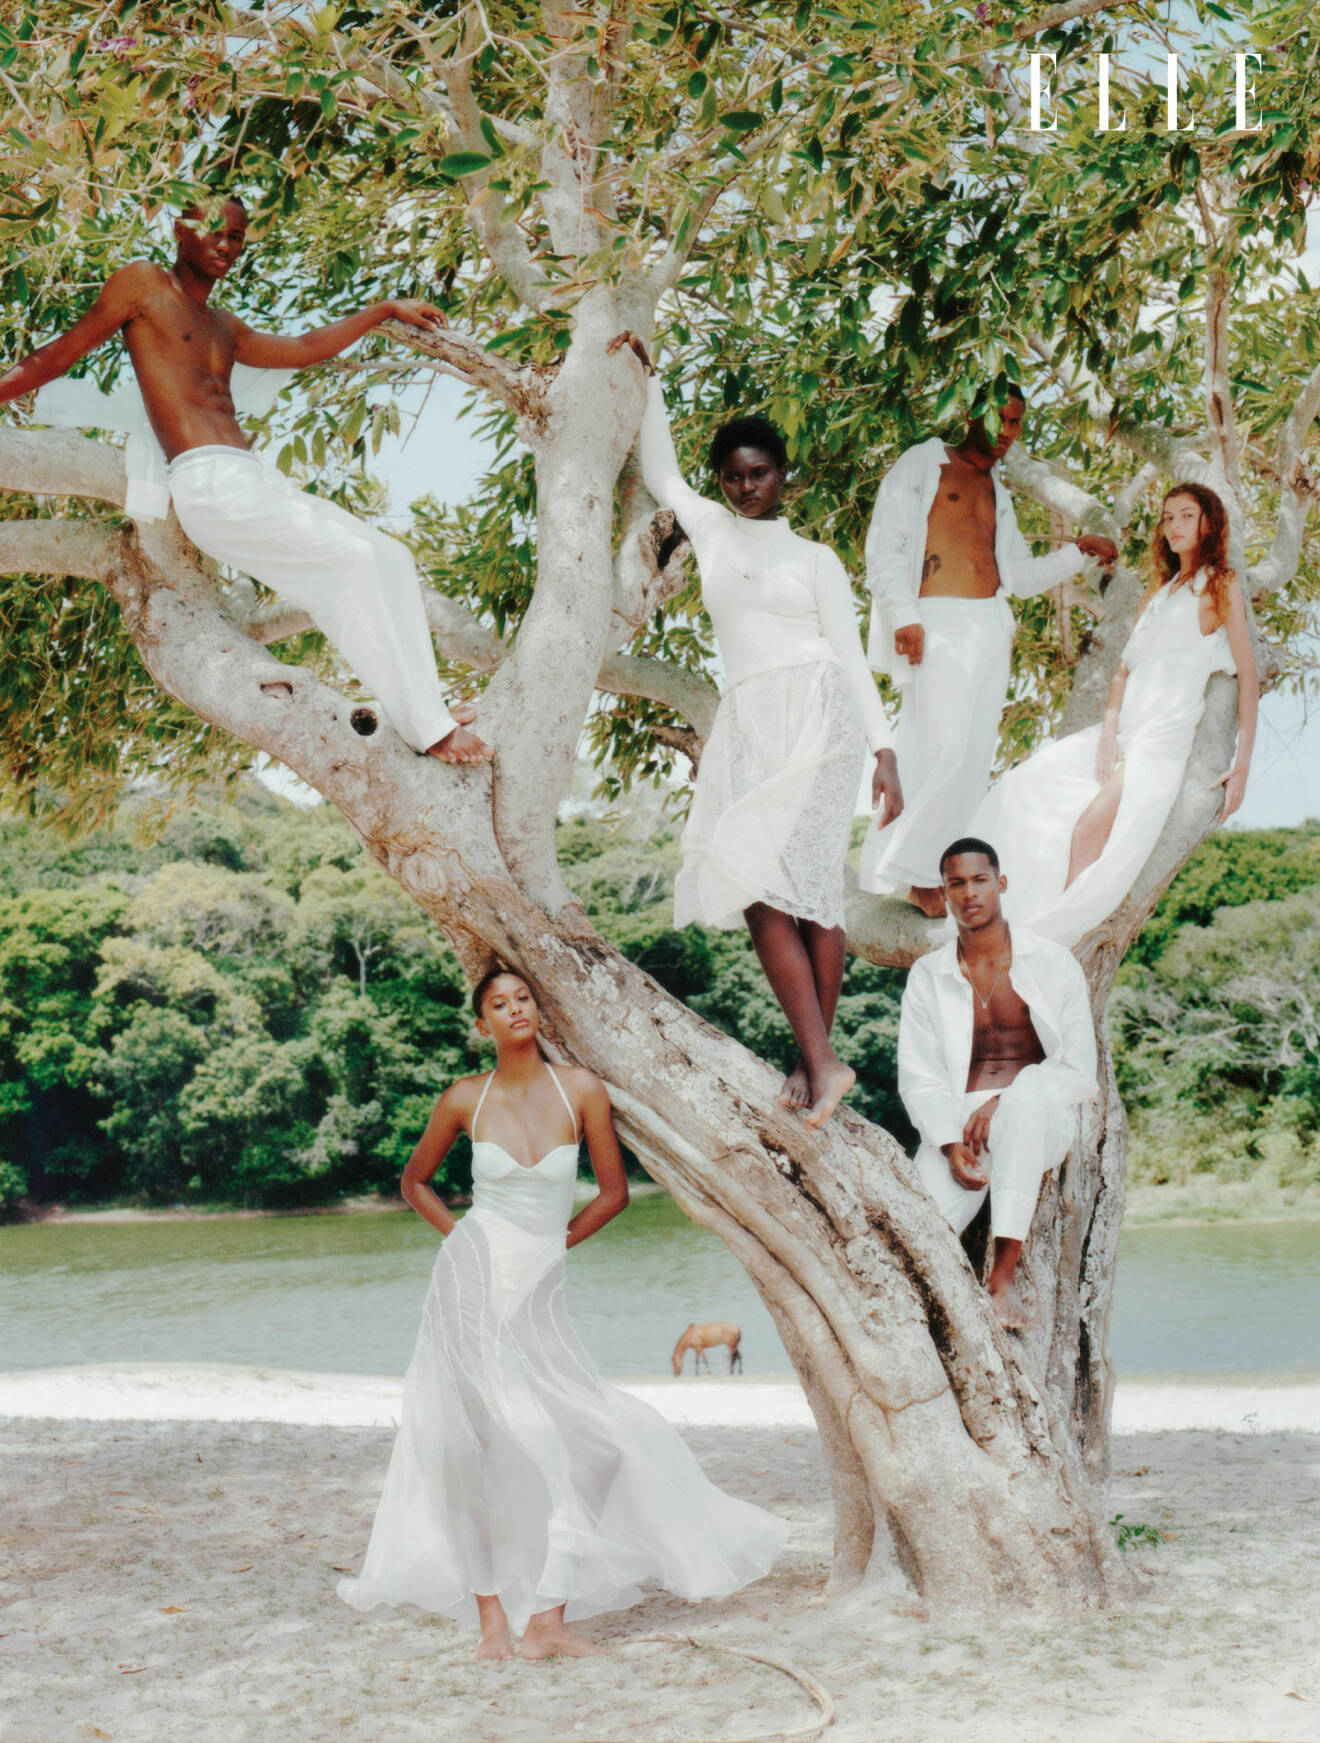 Alla modeller fotograferade tillsammans i ett träd, alla klädda i vitt